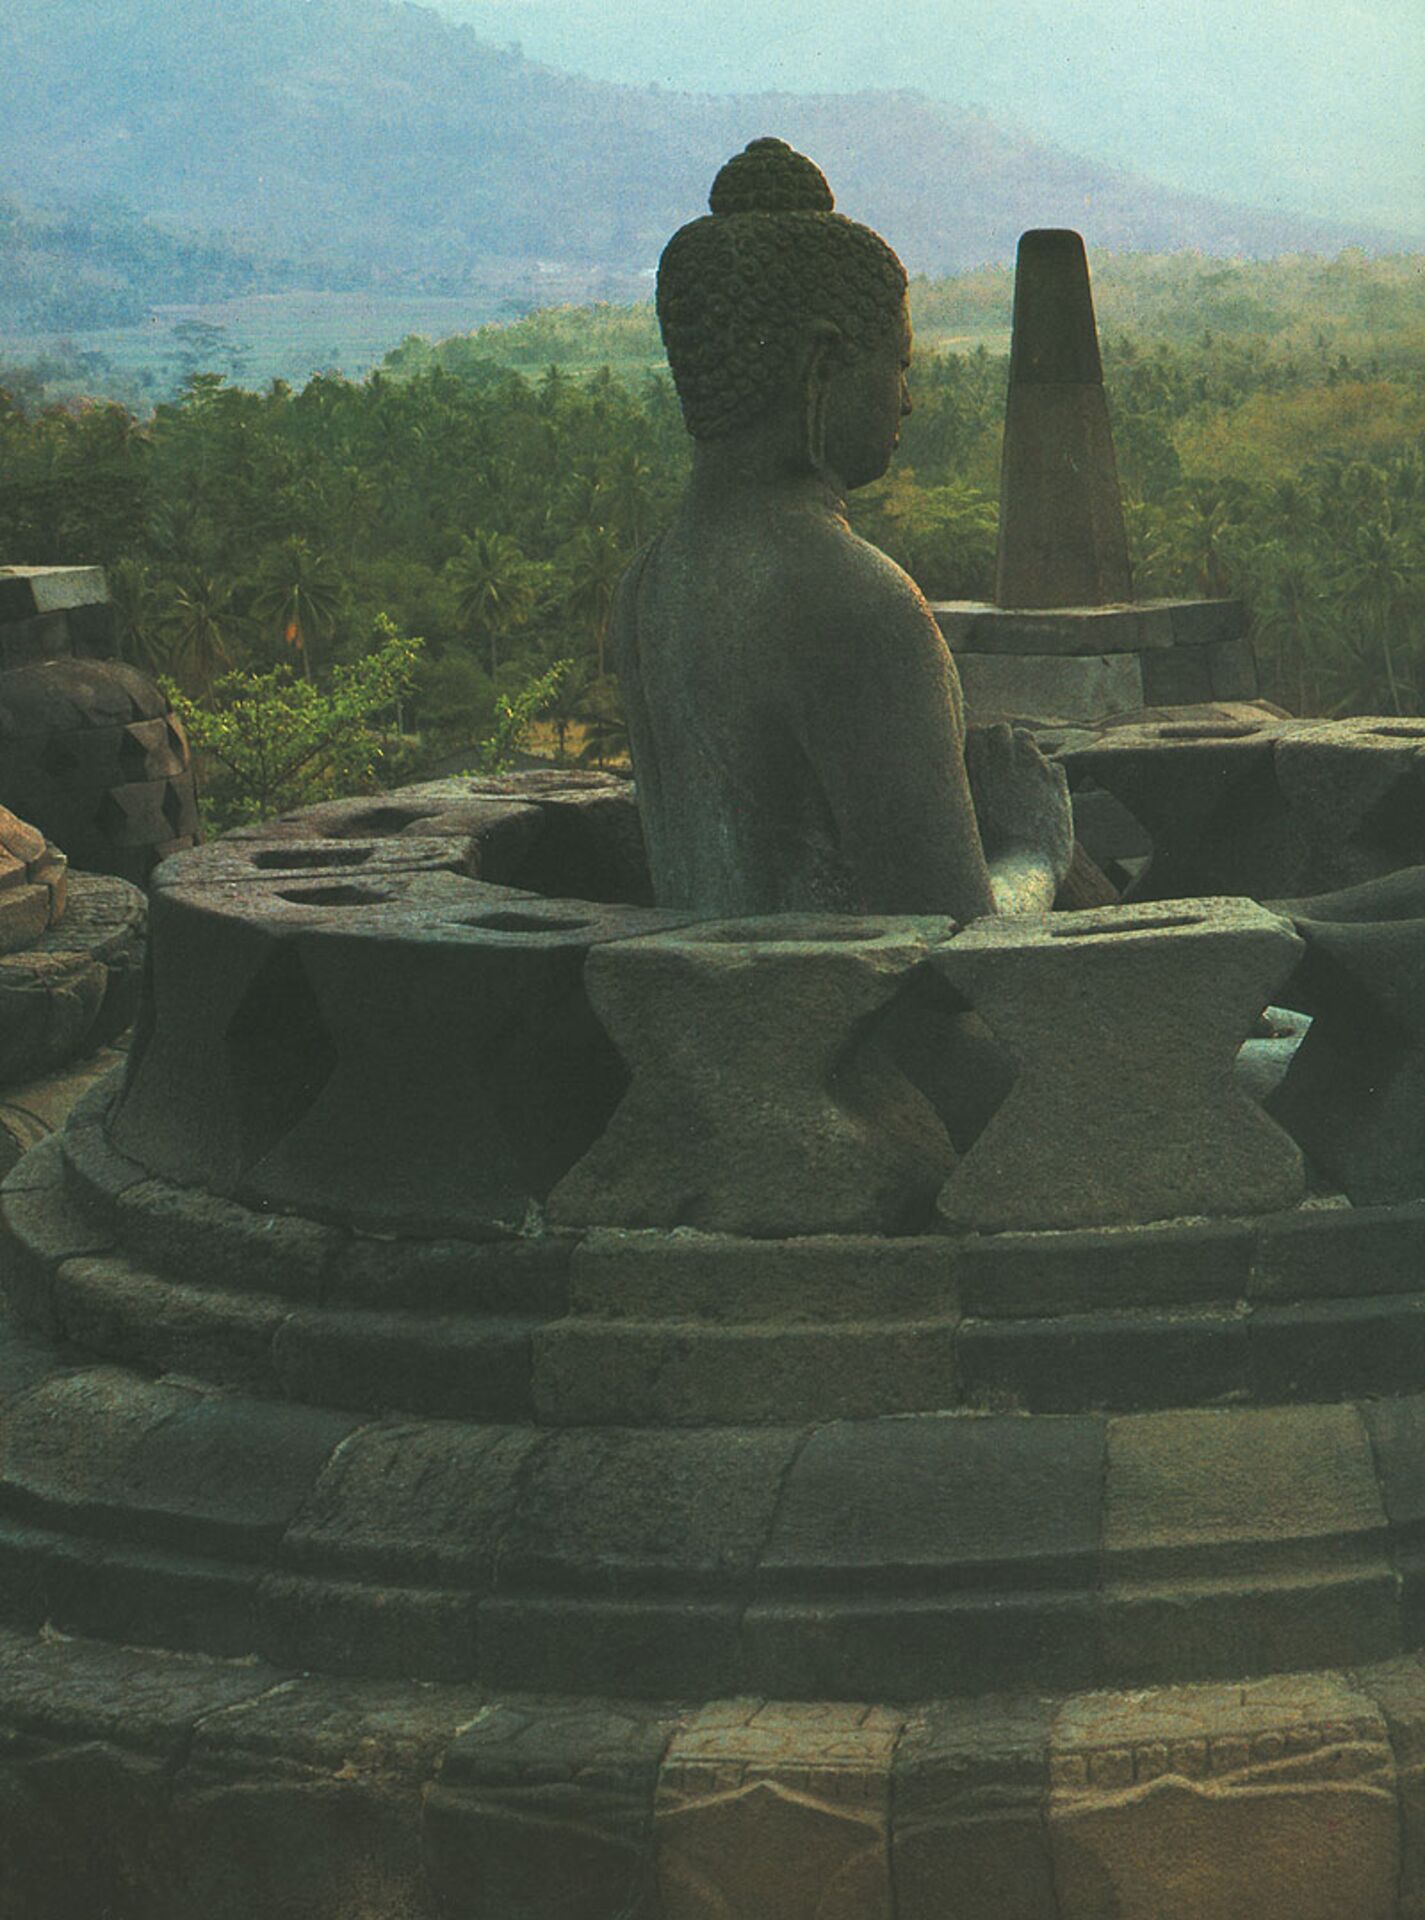 Terraza redonda con su stûpa calado. Imagen de Vairochana, el Buda supremo.